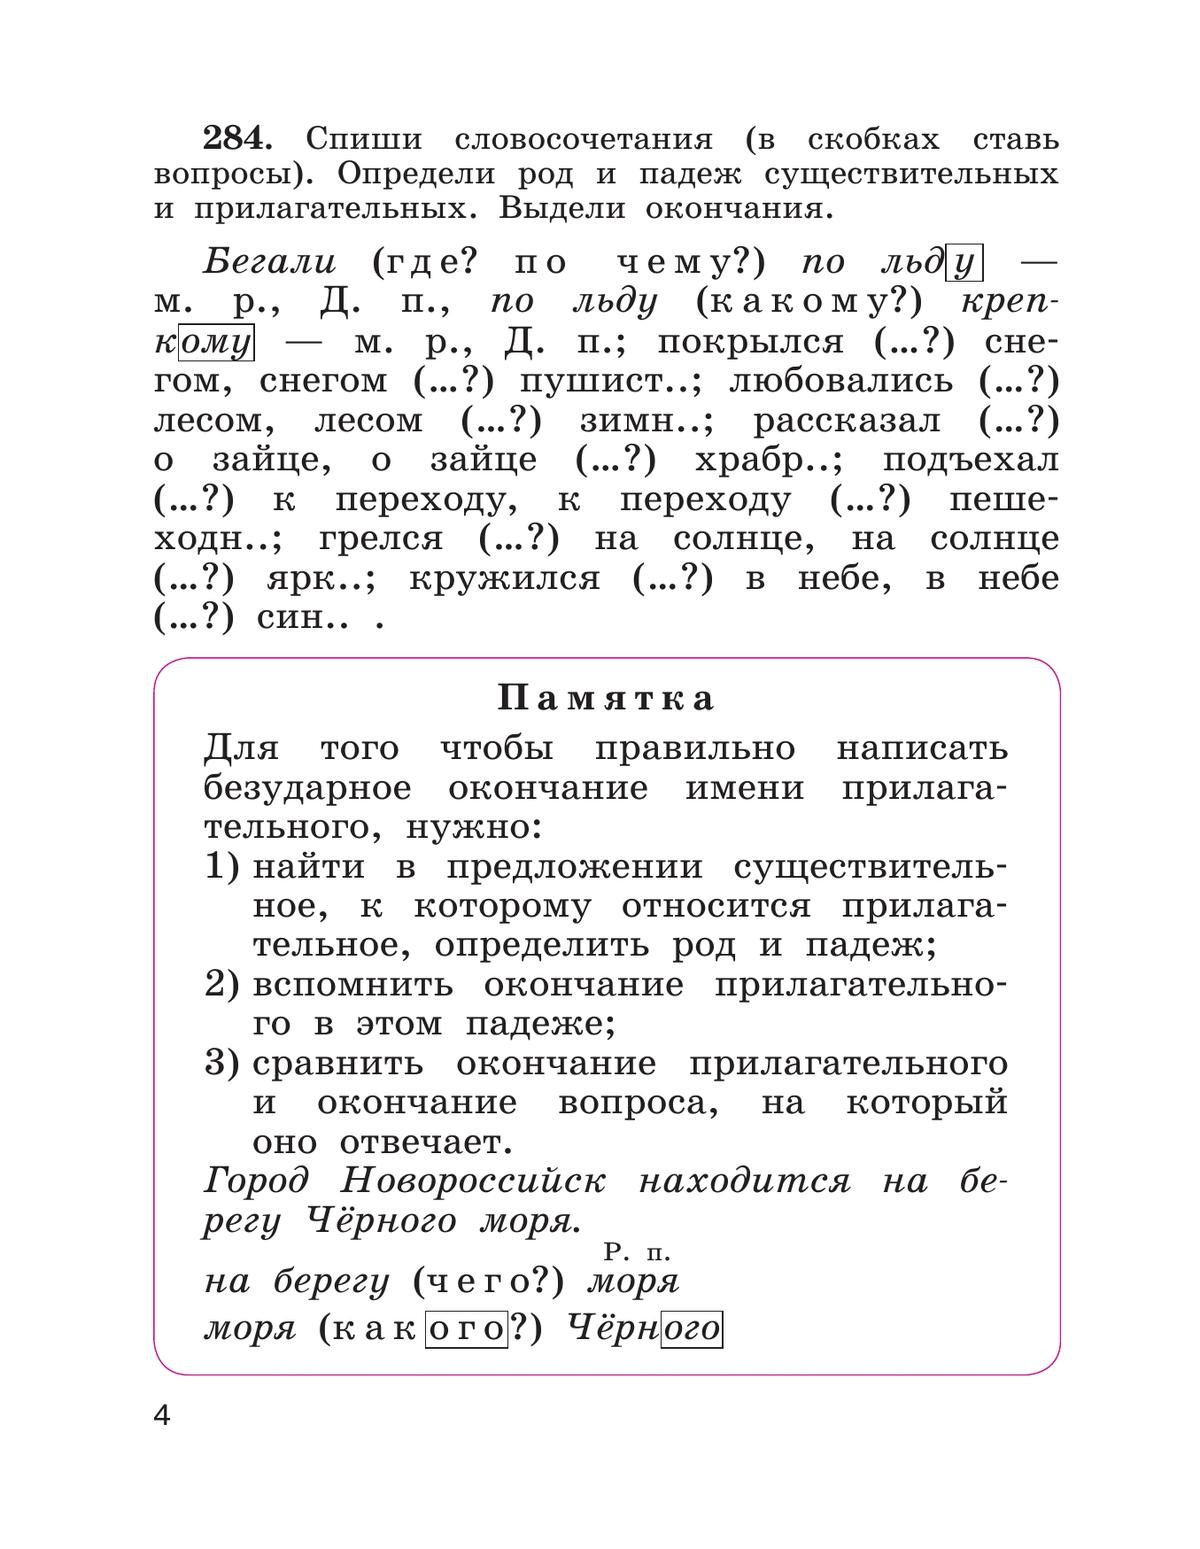 Русский язык. 4 класс. Учебник. В 2 ч. Часть 2 10